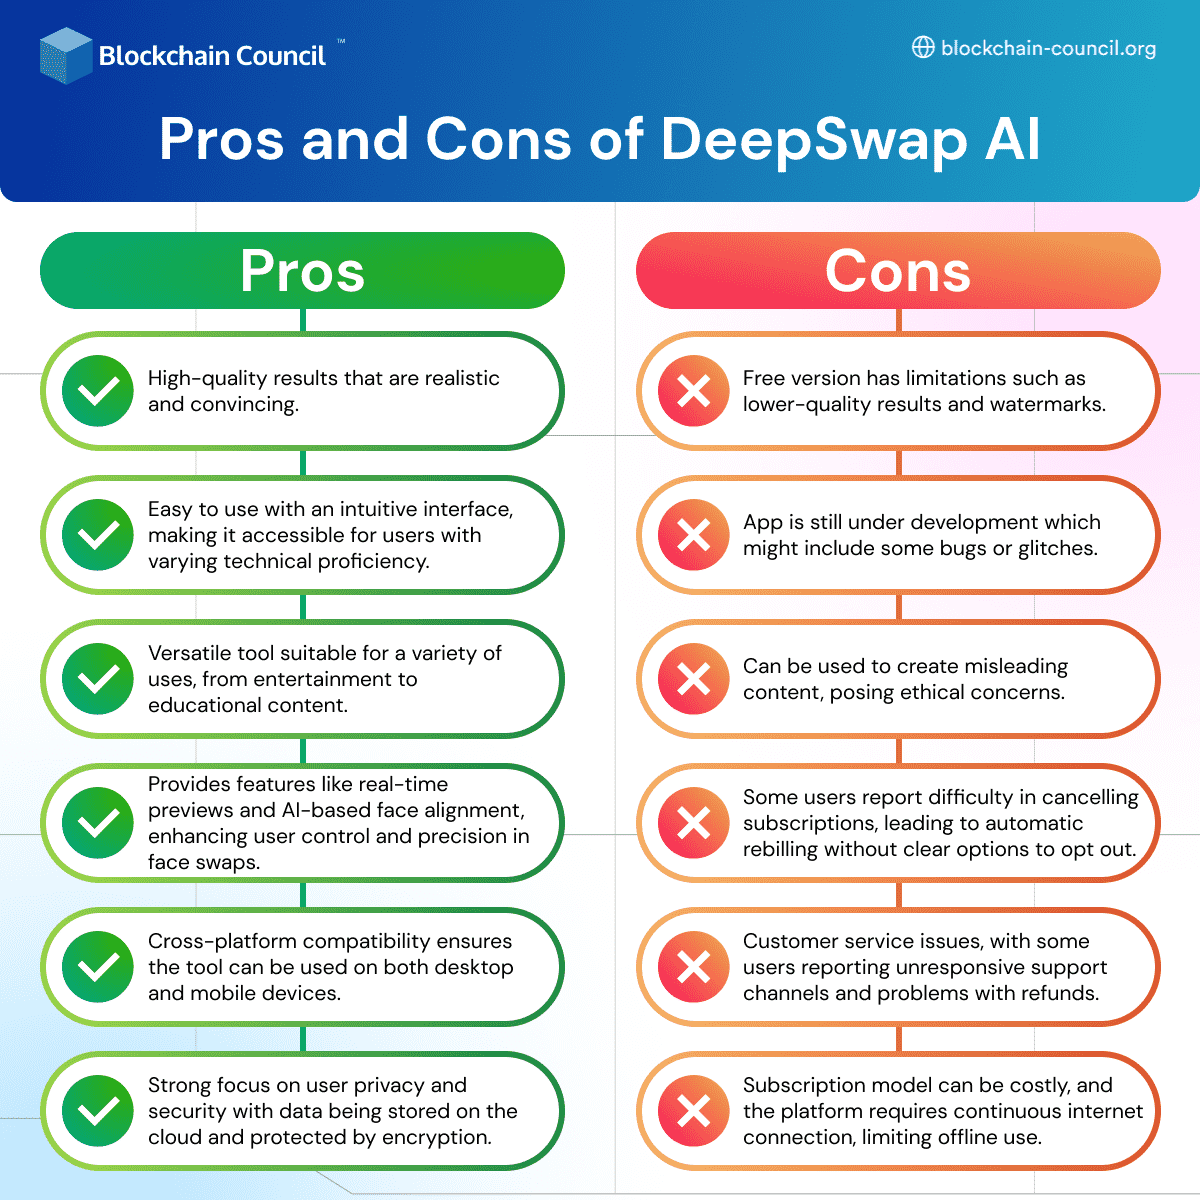 How to Use DeepSwap.AI?